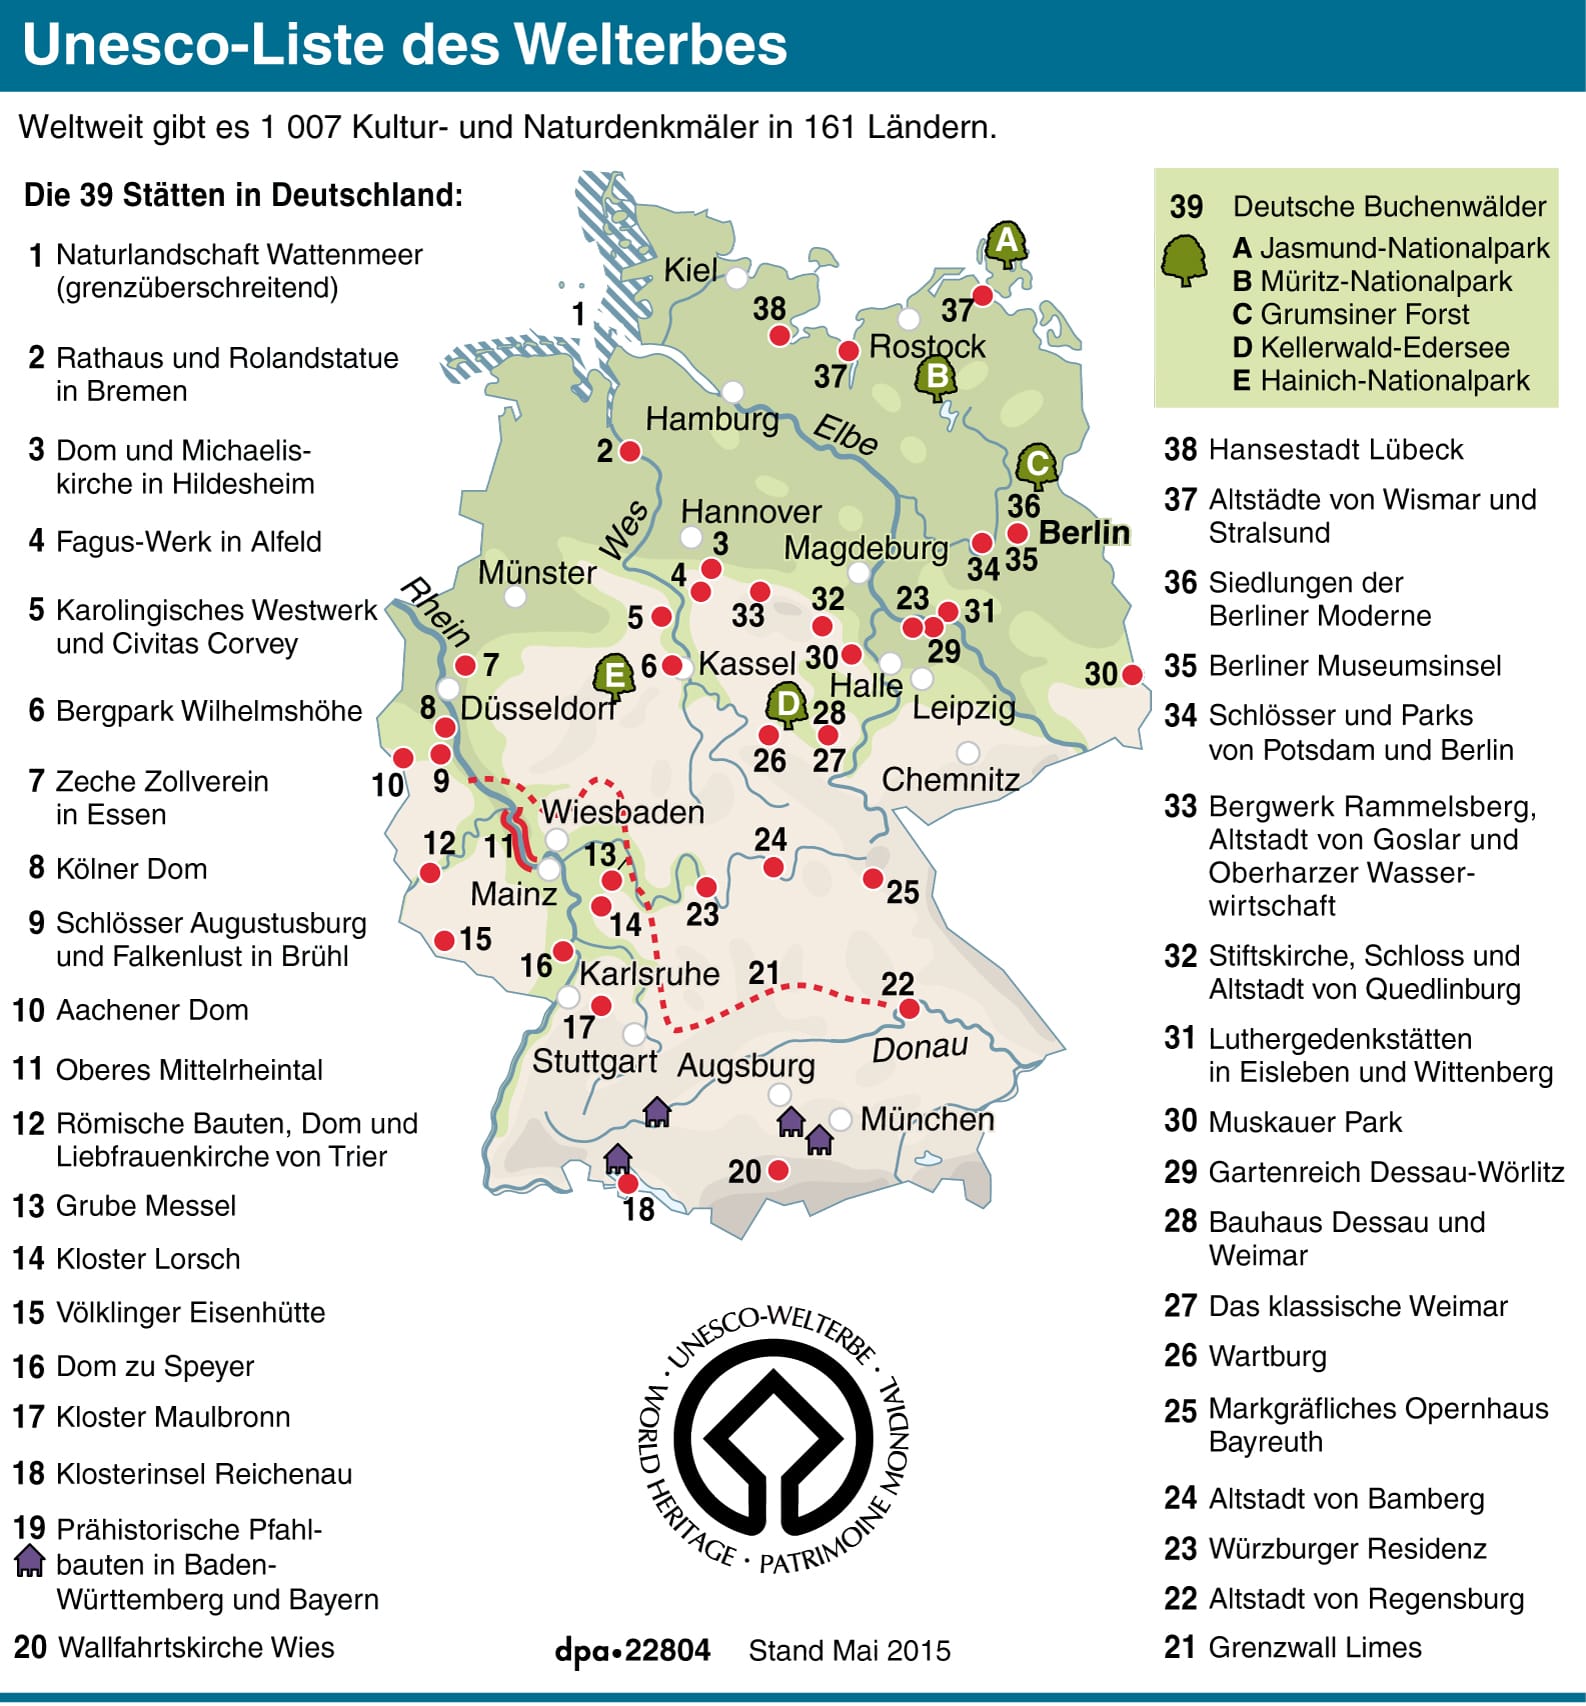 Das sind die bisherigen Unesco-Welterbestätten in Deutschland.